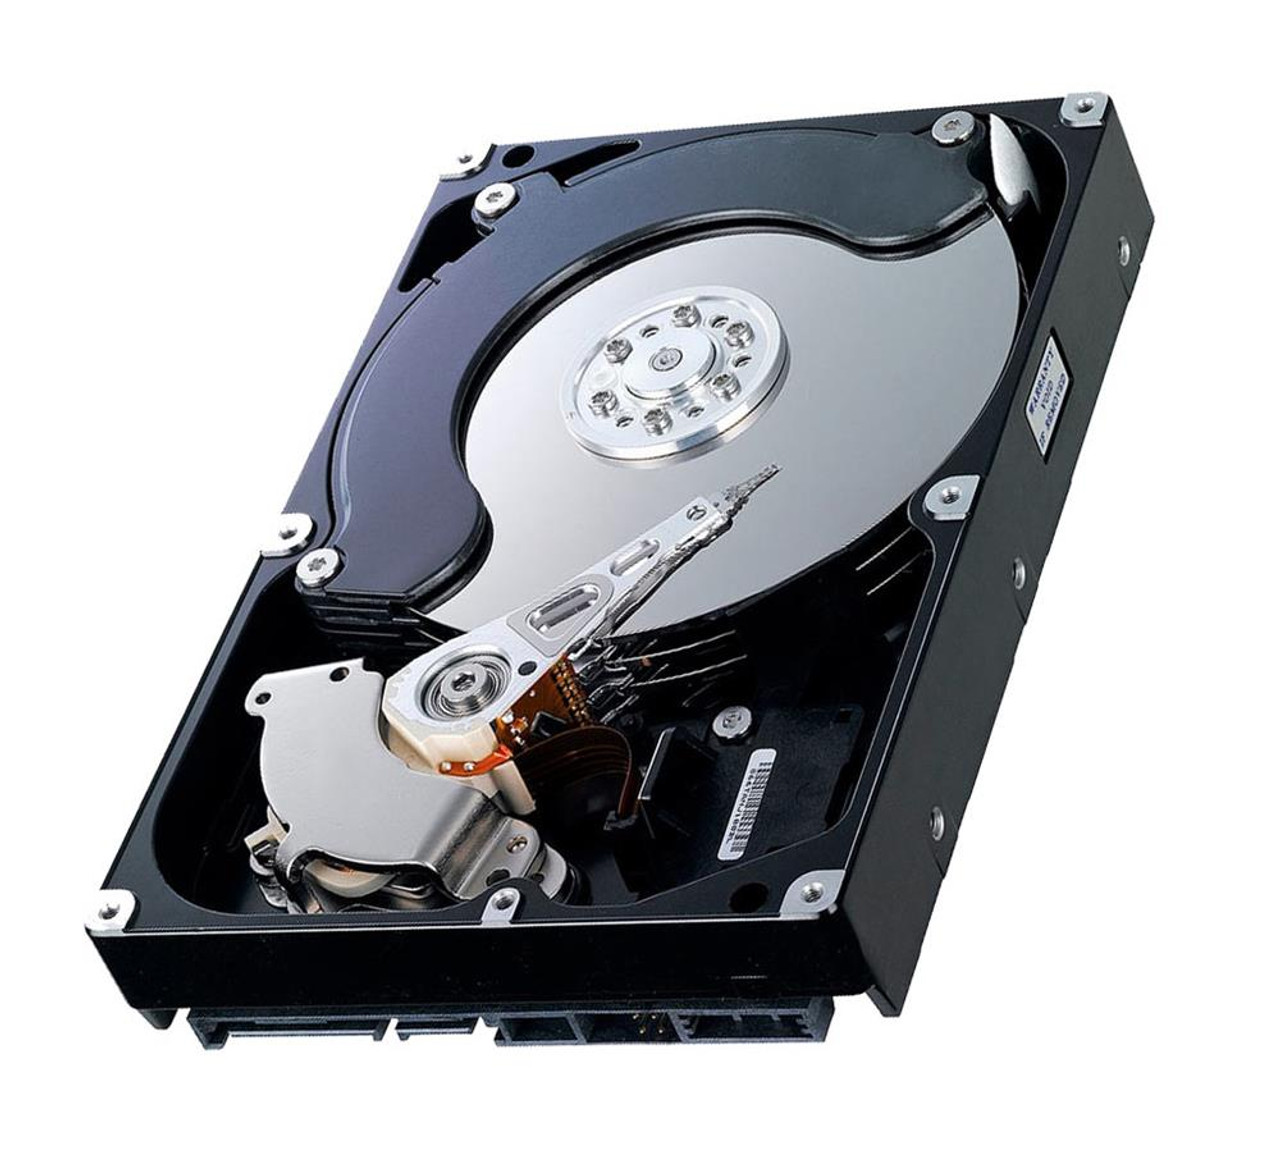 57TMR - Dell 13.6GB 5400RPM ATA/ IDE 3.5-inch Hard Disk Drive